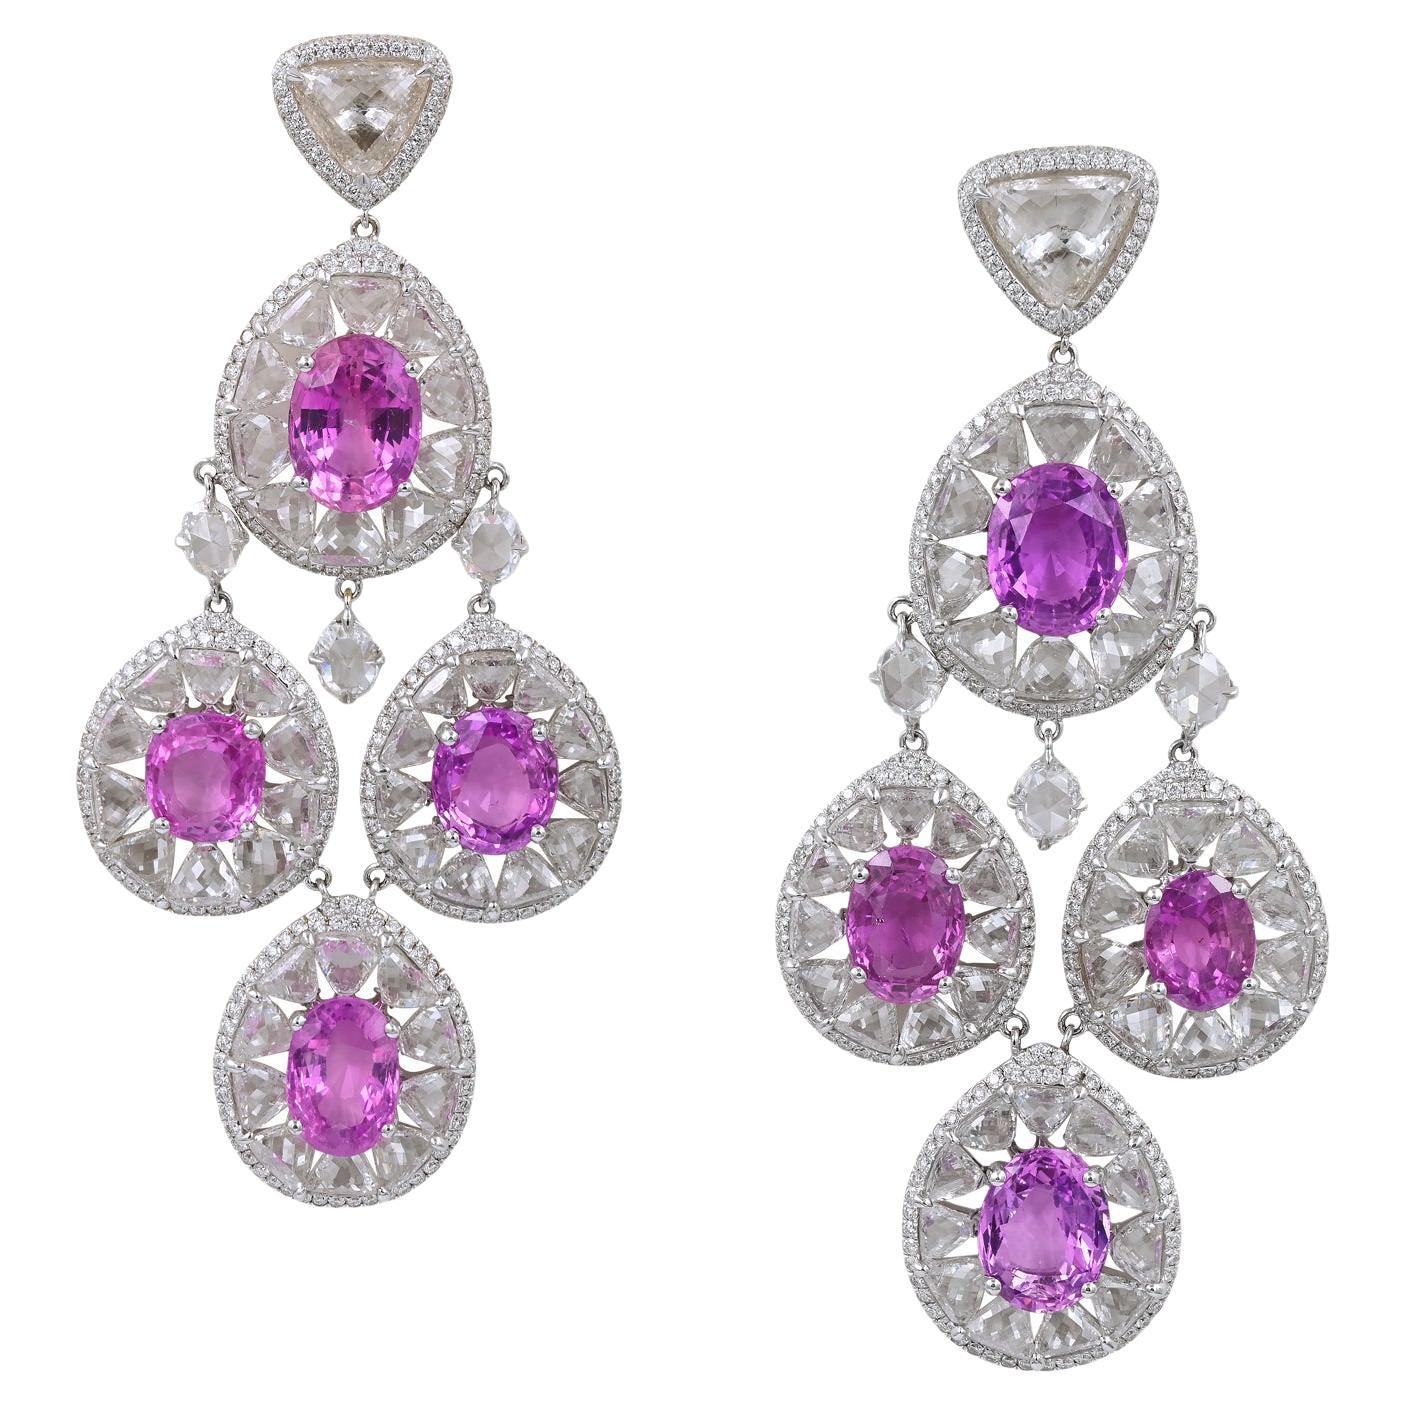 GRS Certified Chopard Ceylon Pink Sapphire Diamond Chandelier Earrings